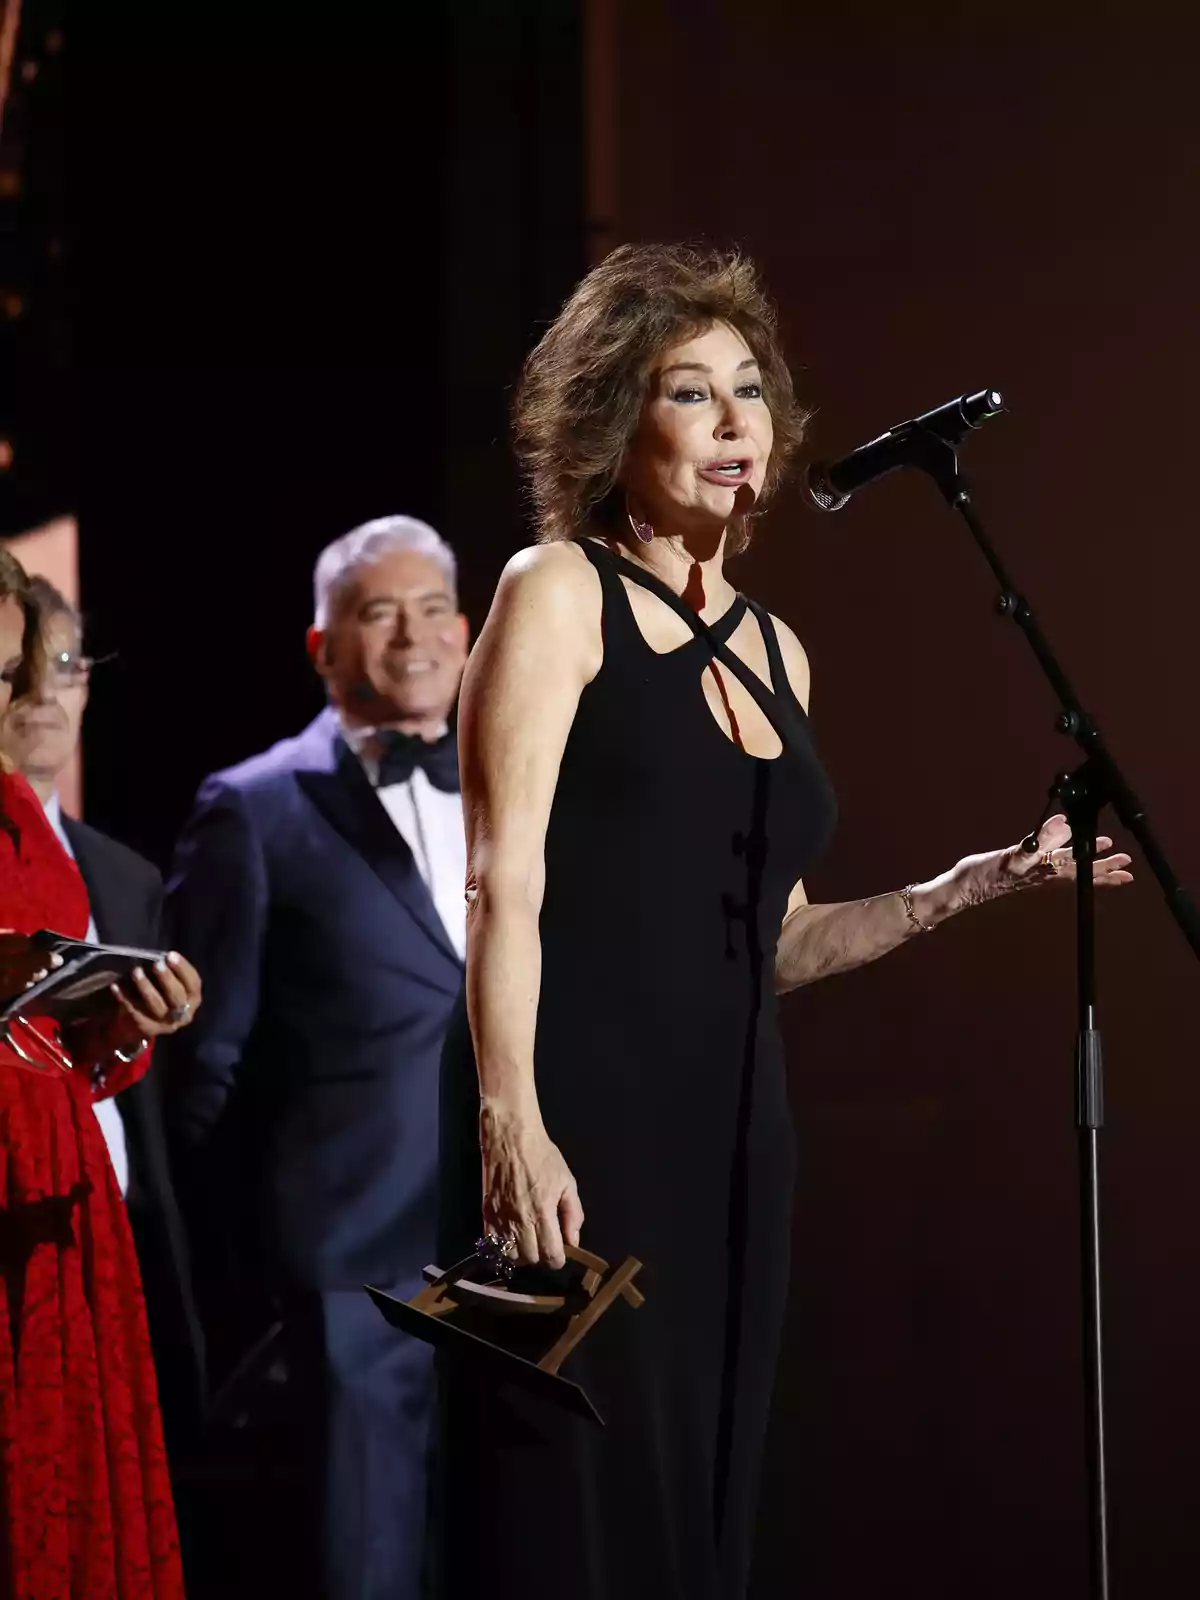 Una mujer con un vestido negro habla en un micrófono mientras sostiene un premio, con personas de fondo.